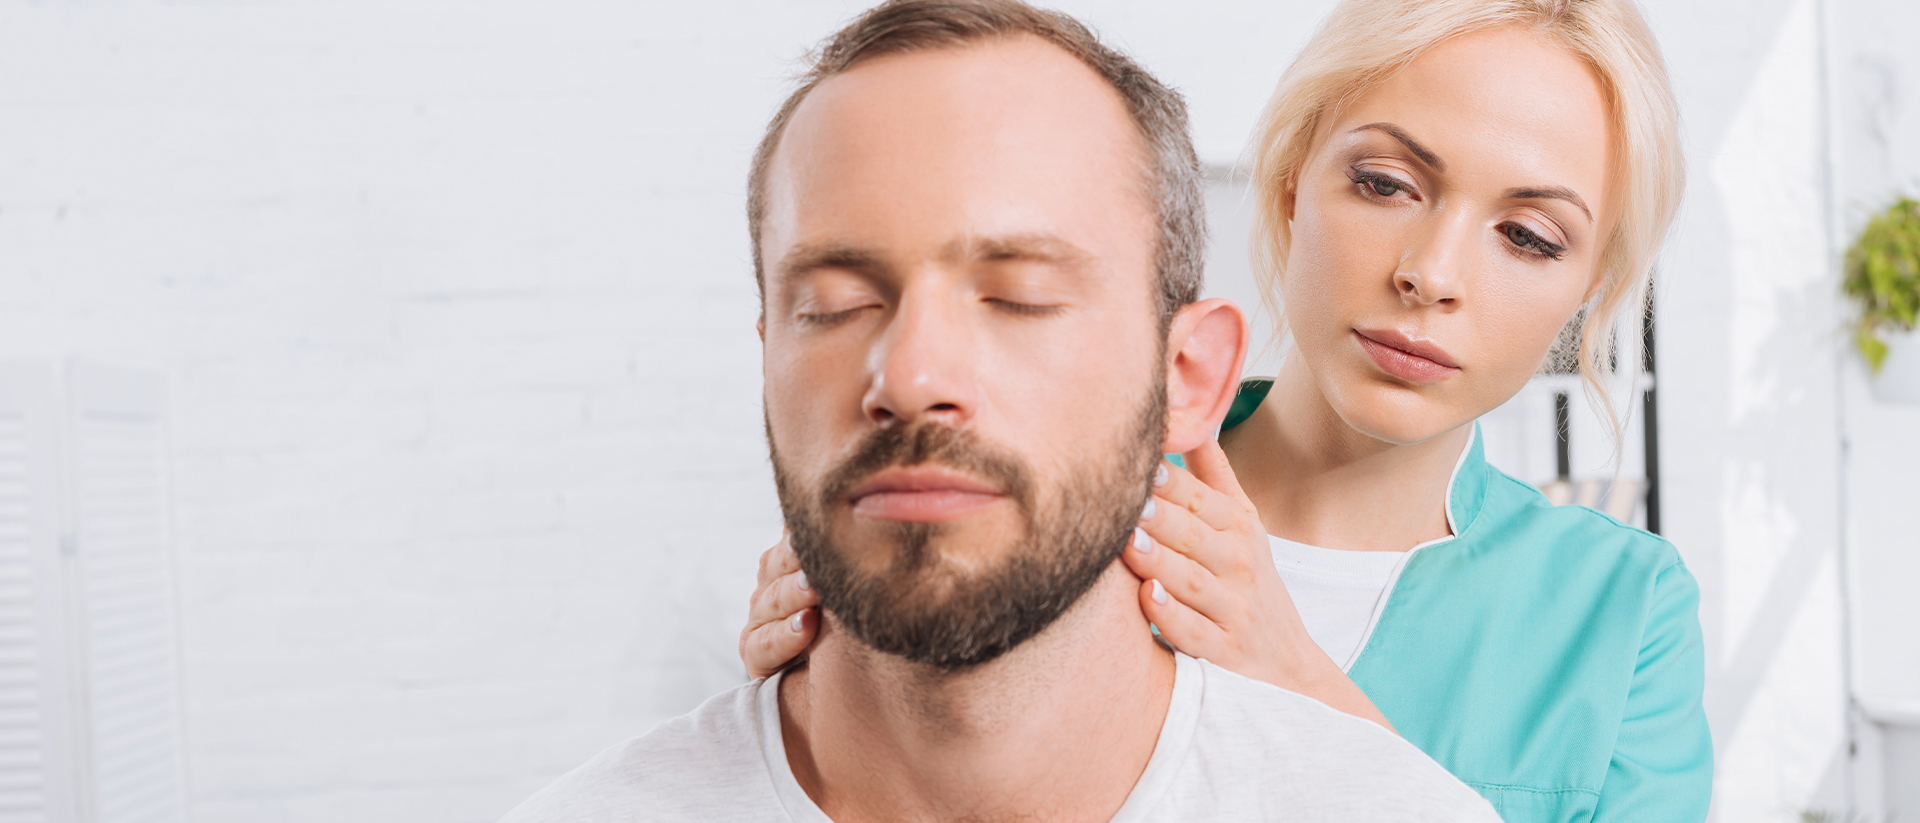 Kopfschmerzen erfolgreich behandeln – aber wie?